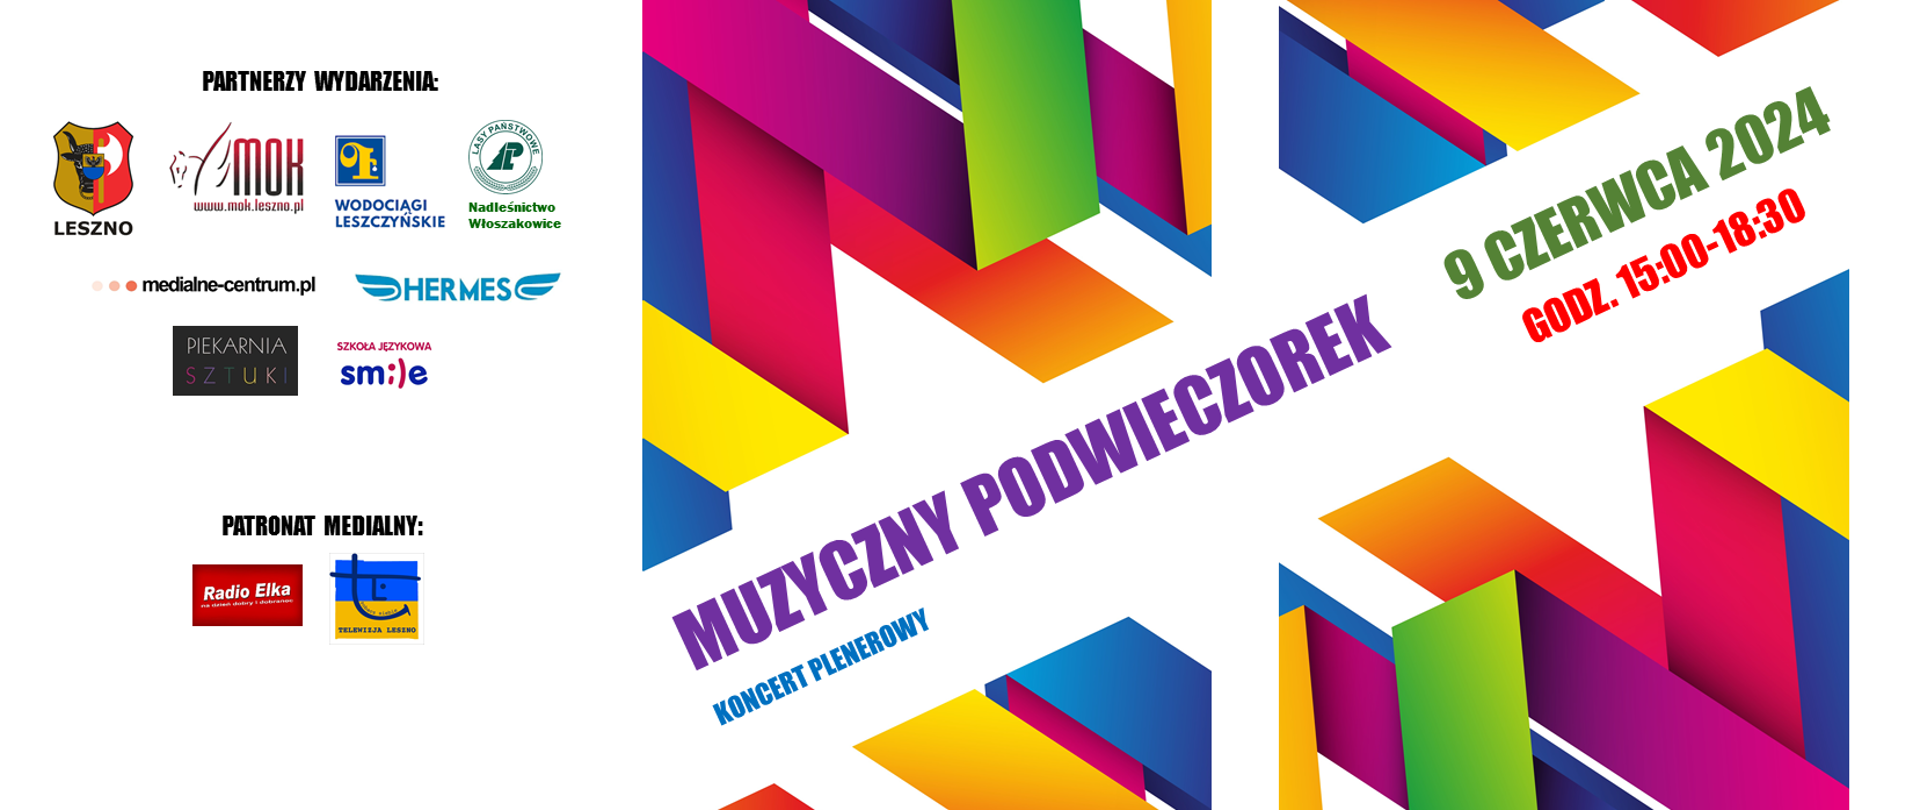 Plakat Muzyczny podwieczorek koncert plenerowy z kolorową grafiką i logami sponsorów